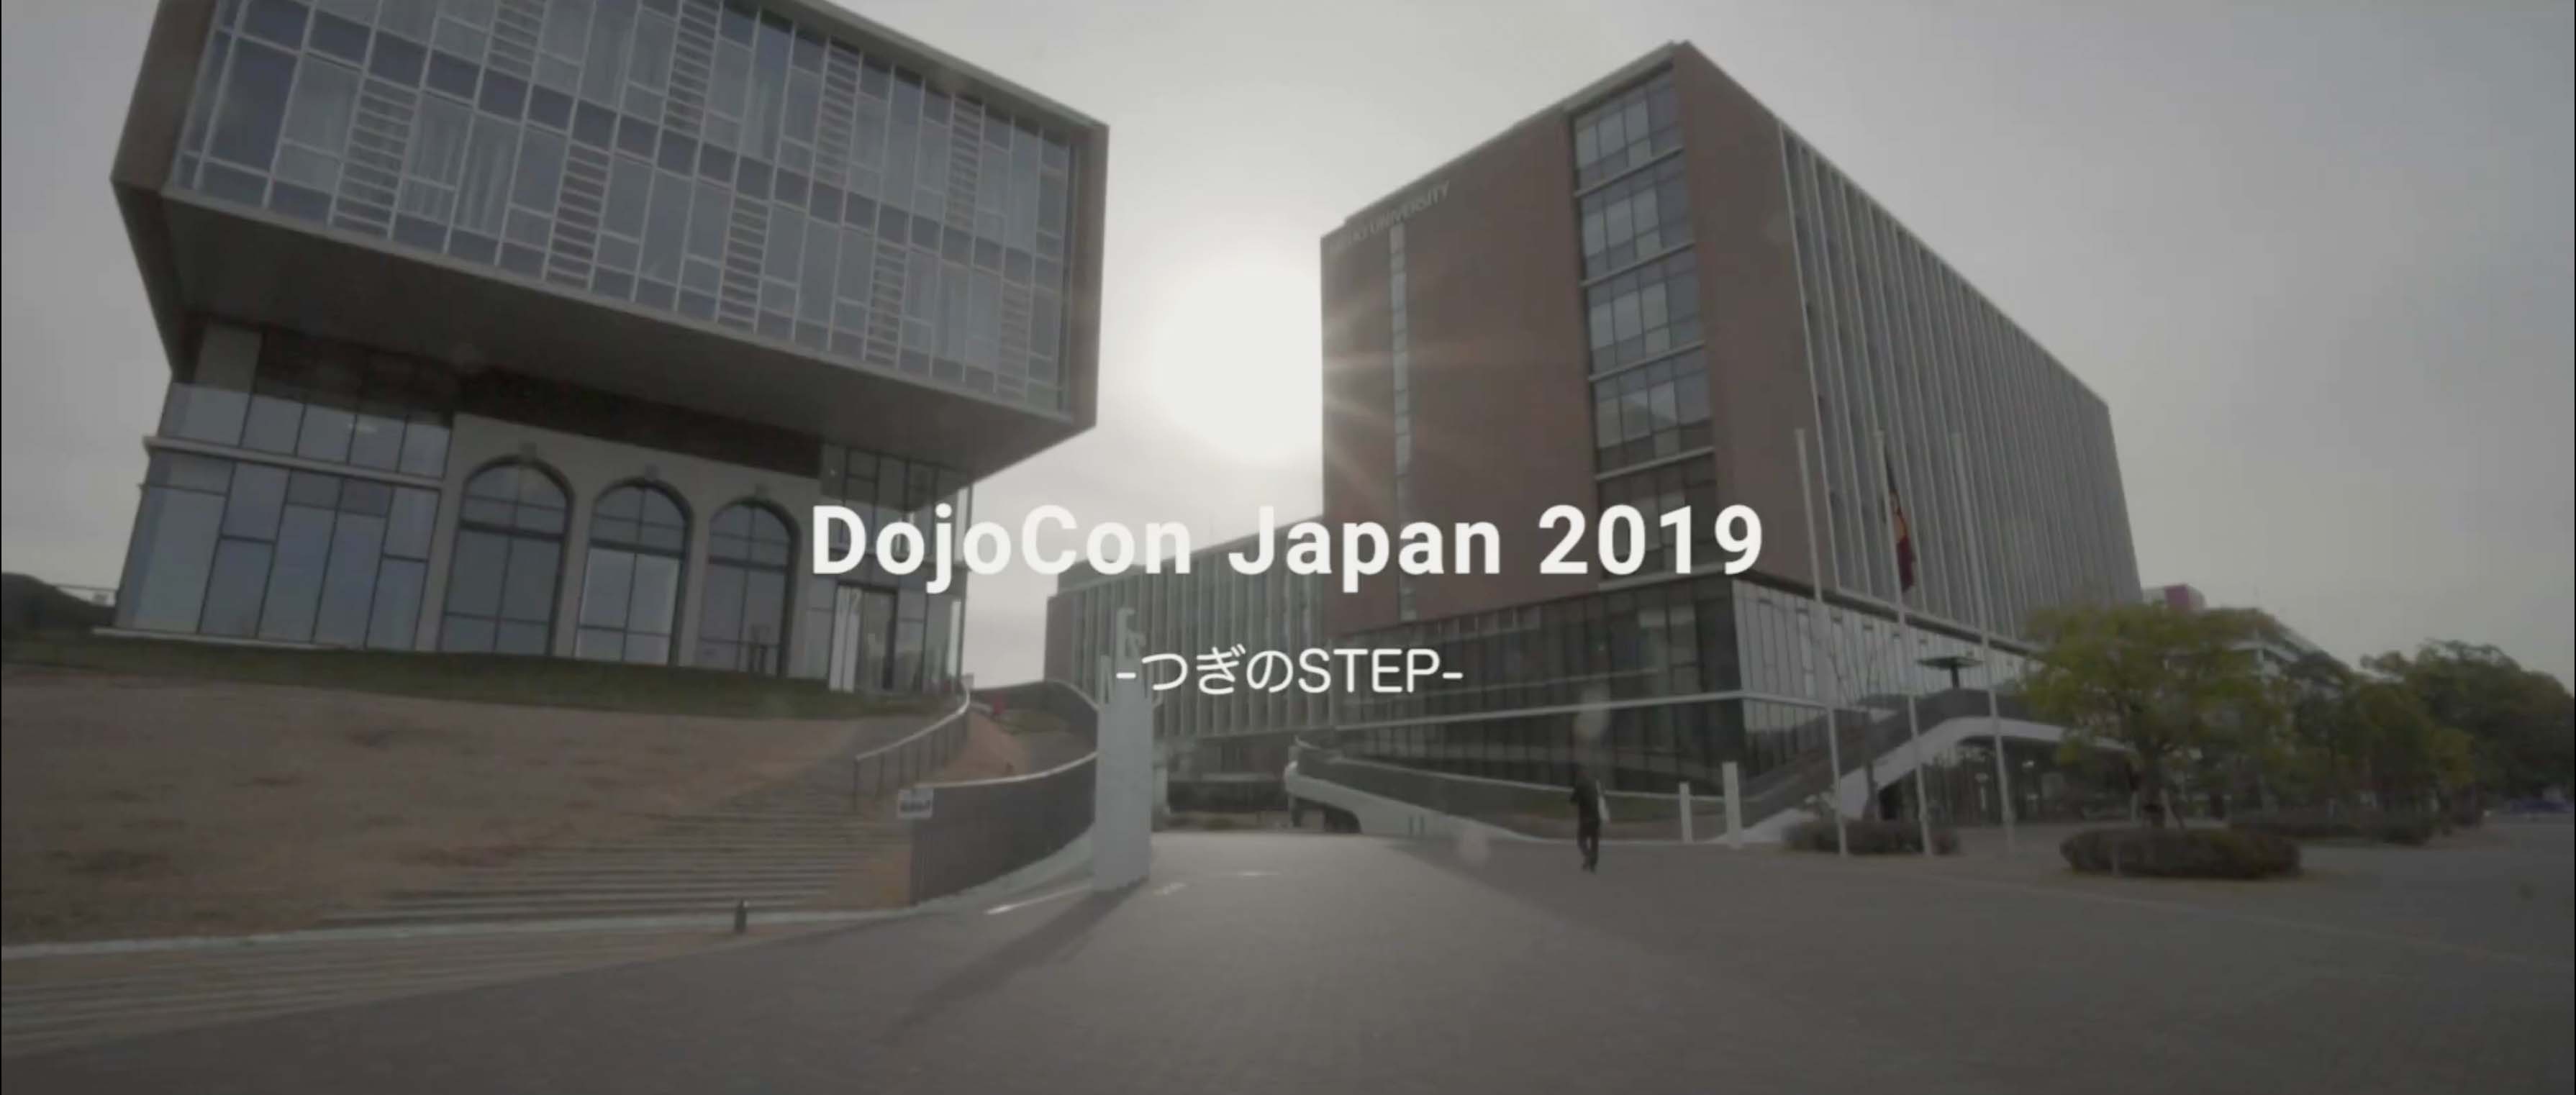 Digest - DojoCon Japan 2019